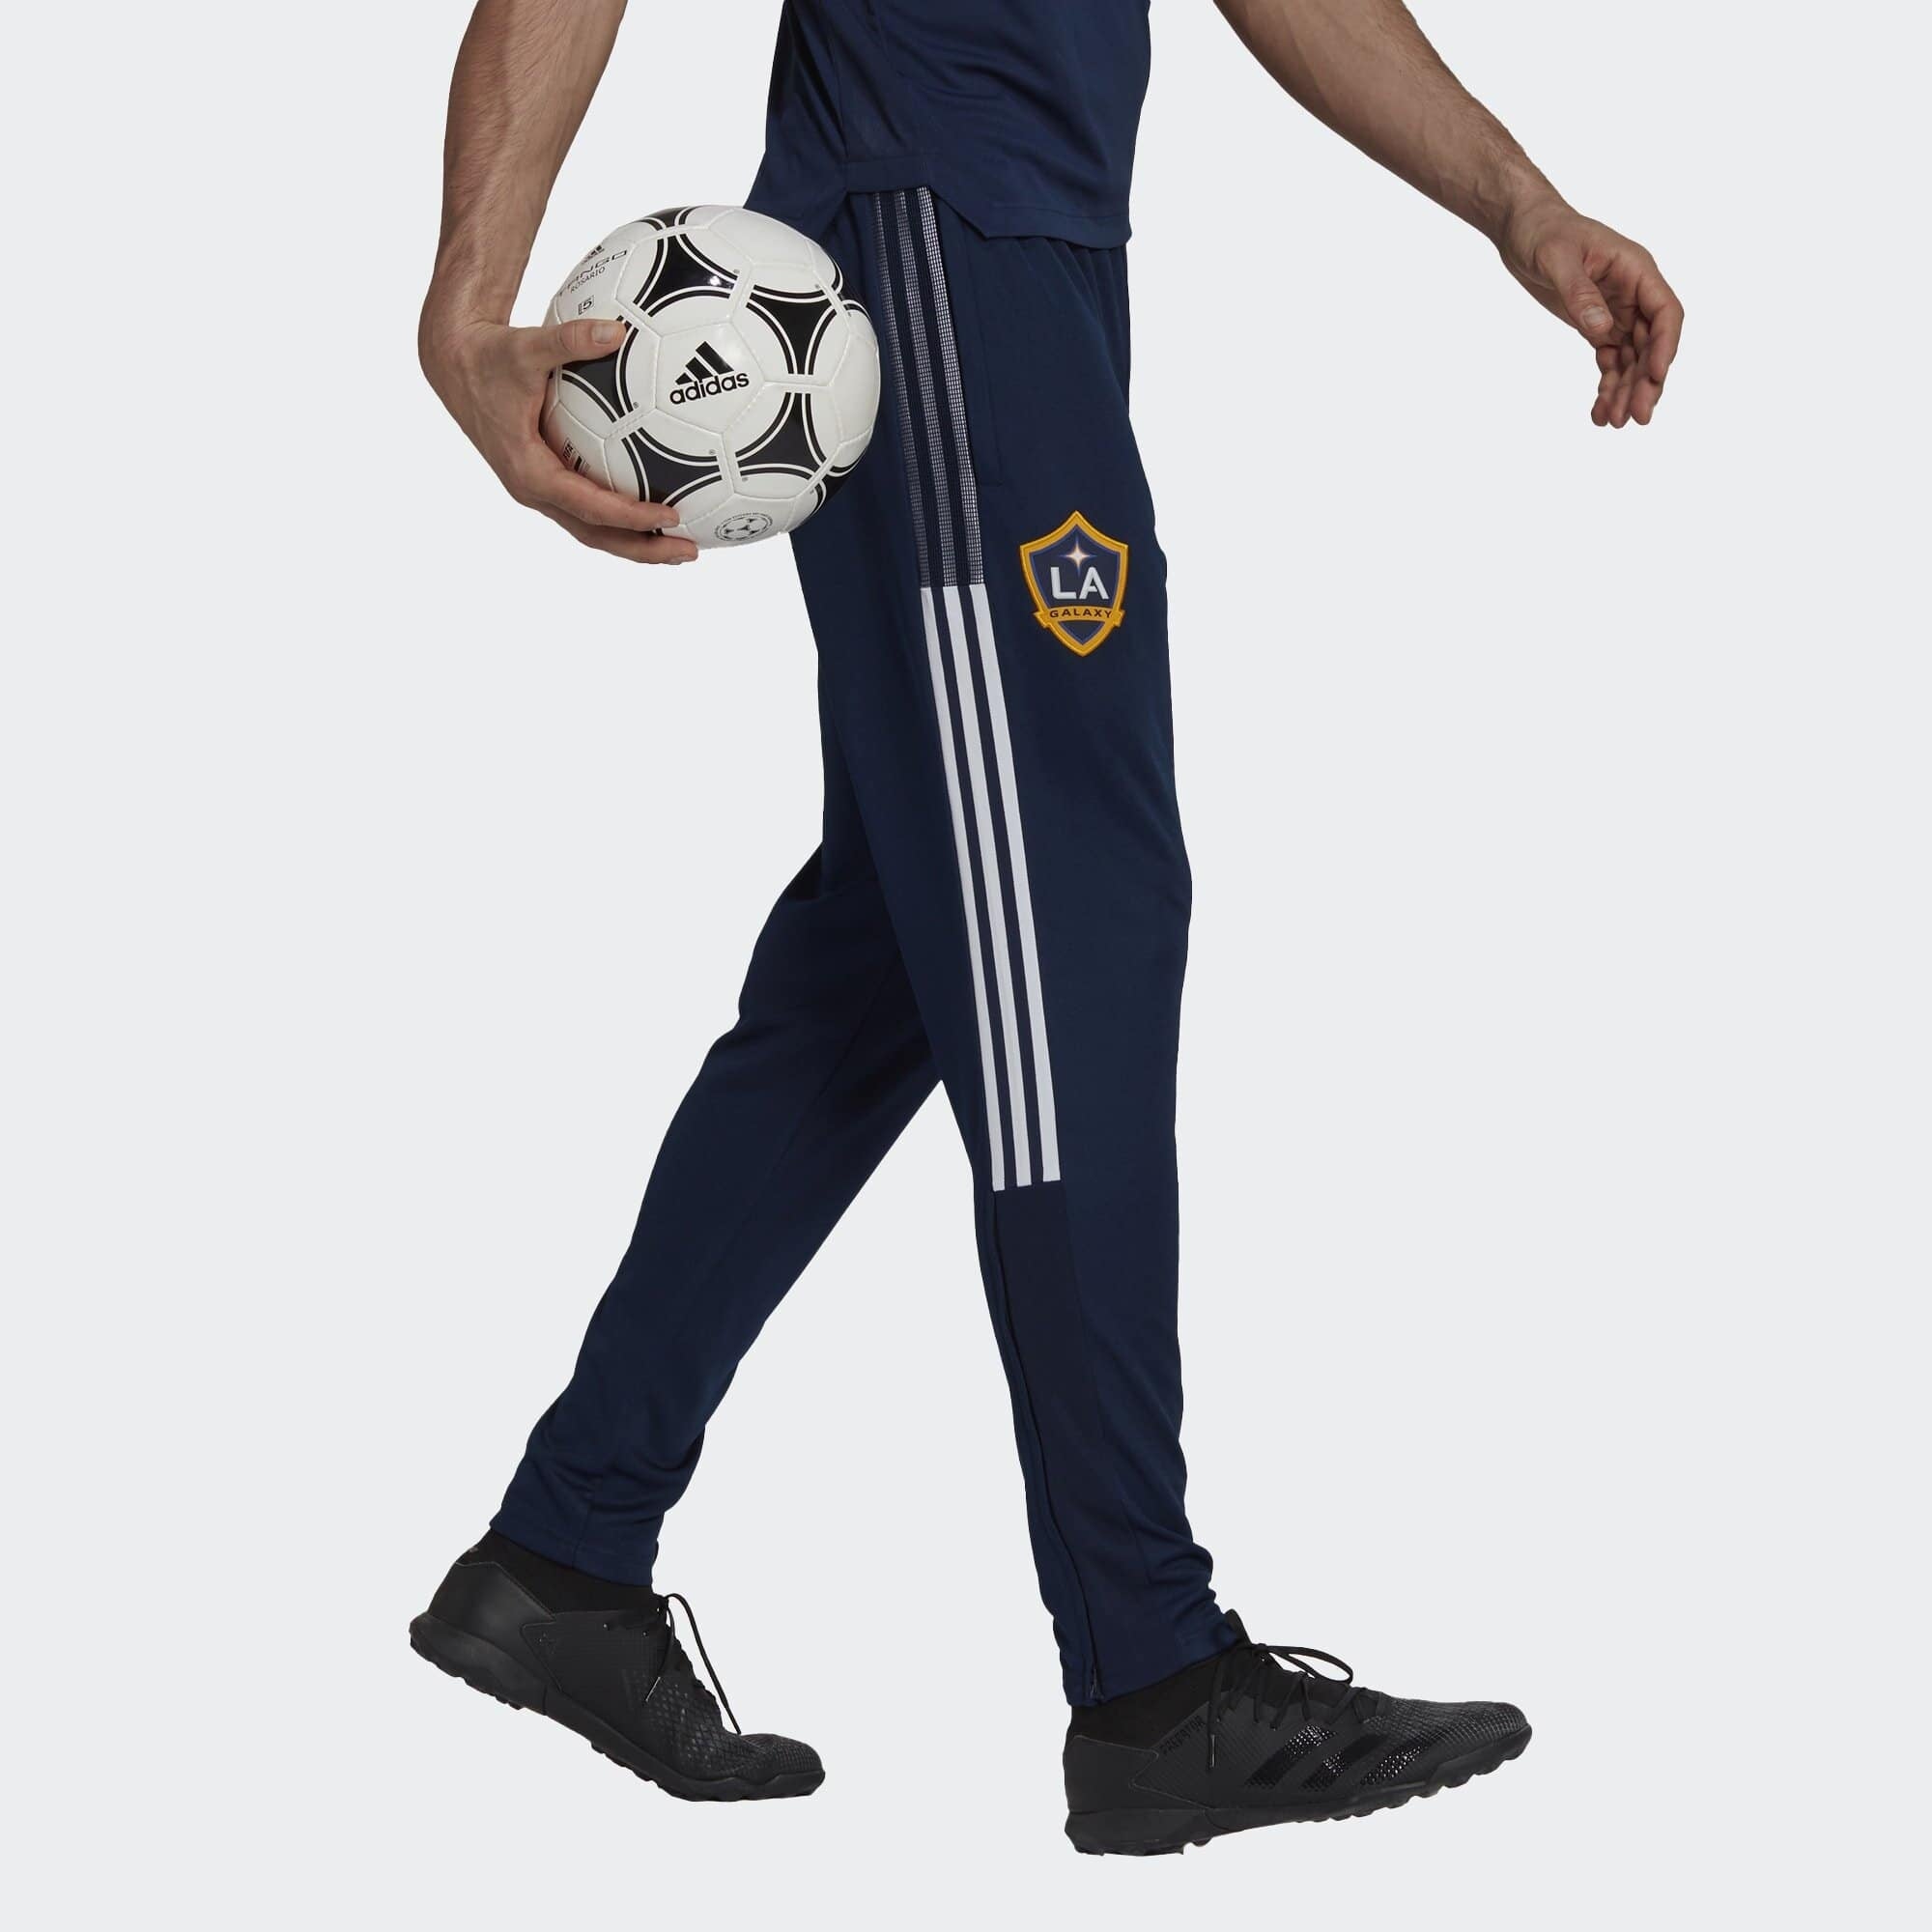 Pantalones de entrenamiento Los Angeles Galaxy 2021 - Azul/Dorado